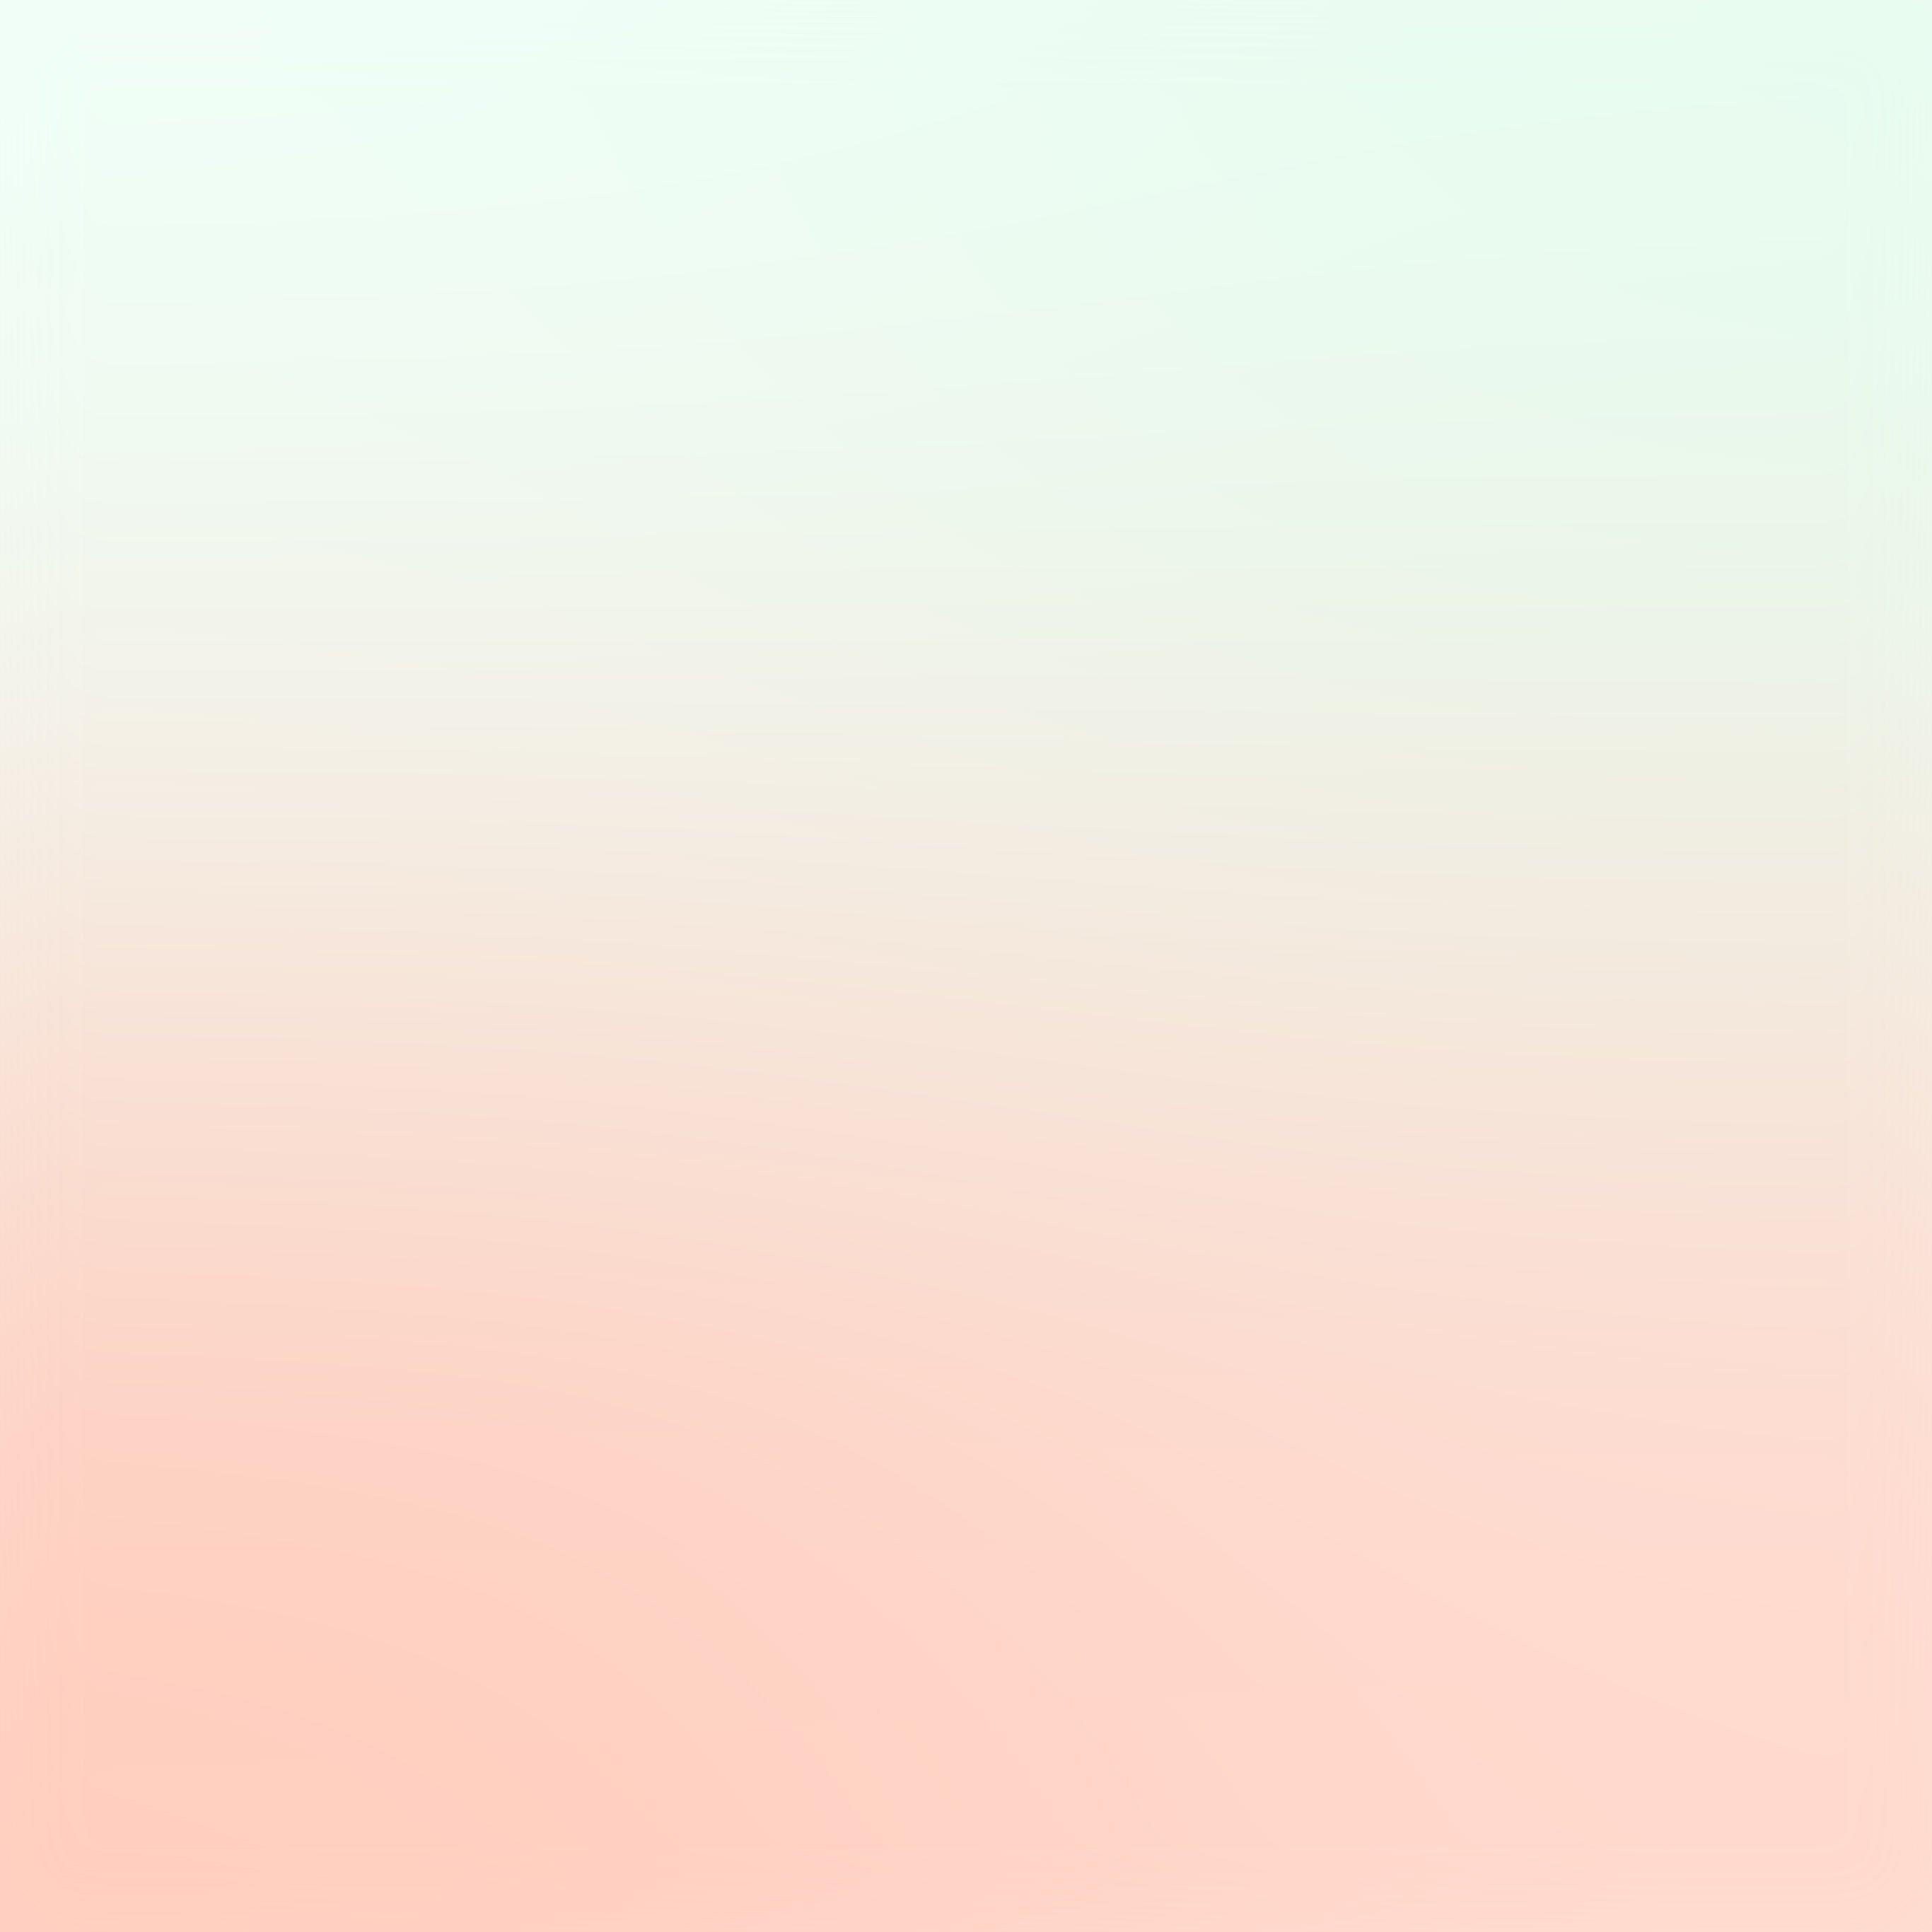 pastel gradient background